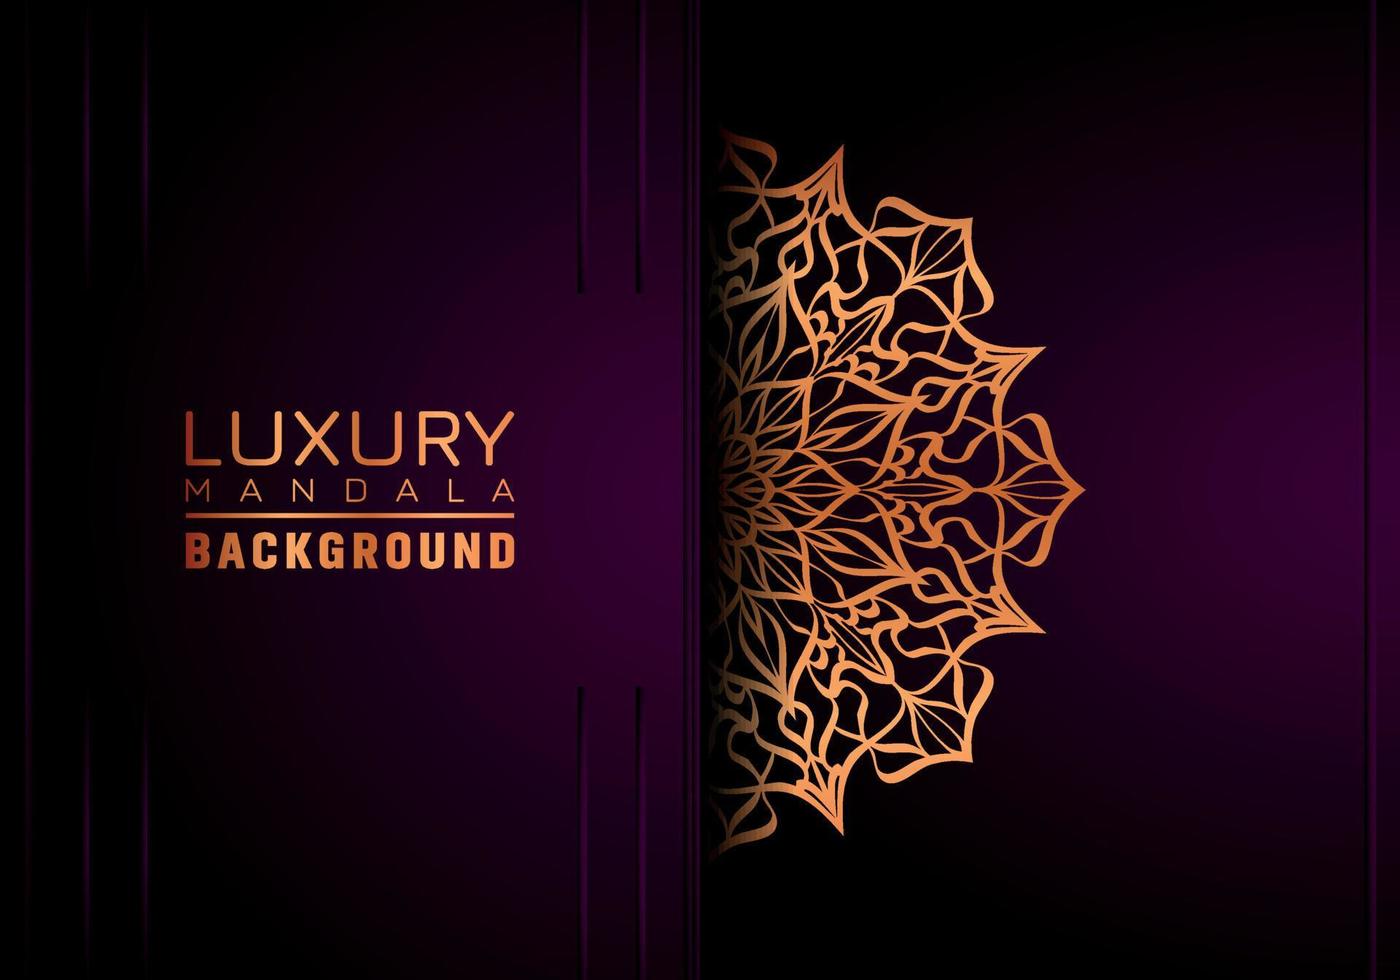 Luxus-Mandala-Zierhintergrunddesign mit goldenem Arabeskenmusterstil. dekorative Mandala-Verzierung für Druck, Broschüre, Banner, Umschlag, Plakat, Einladungskarte. vektor